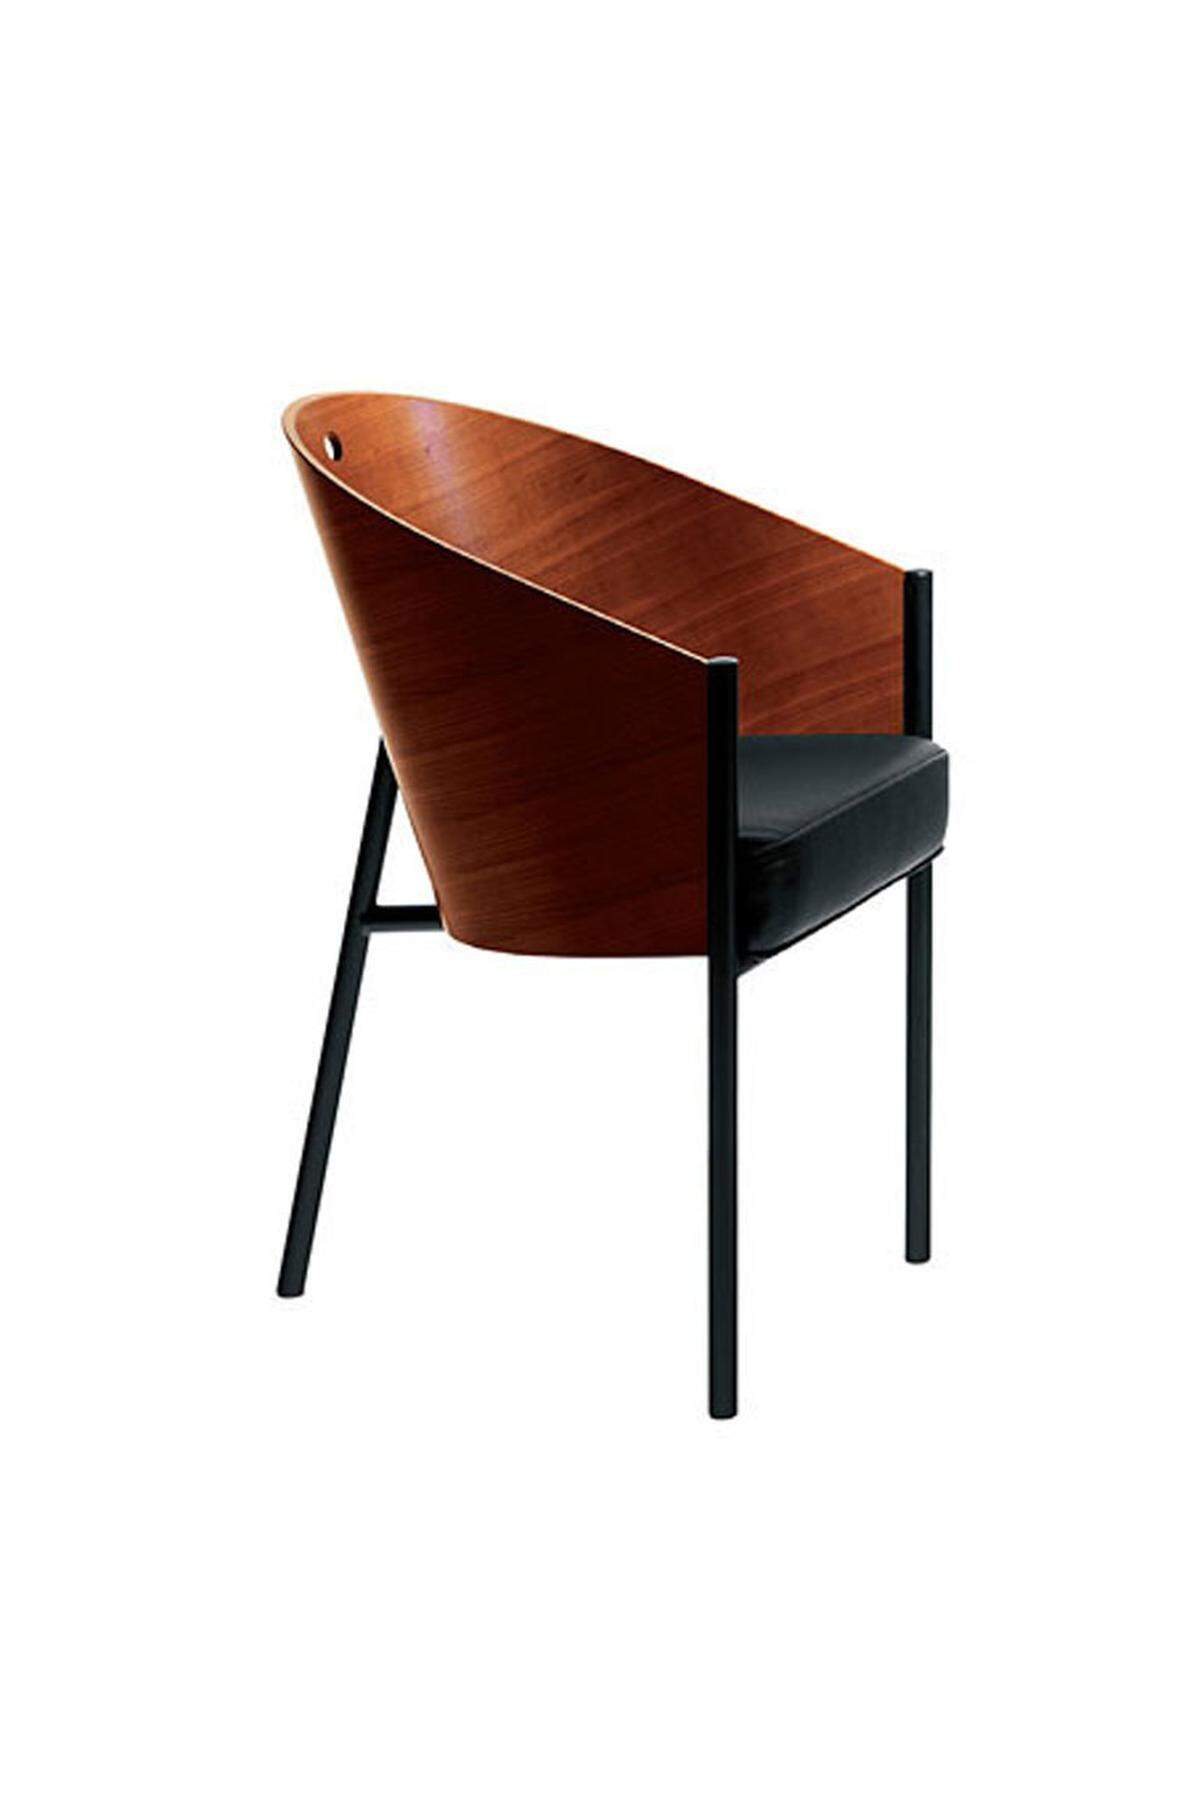 Die Entwürfe des Franzosen Philippe Starck, hier der für ein Pariser Café entworfene "Costes" (1985), bekommt immer wieder neue Auflagen. Seit 1985 produziert Driade den Stuhl.